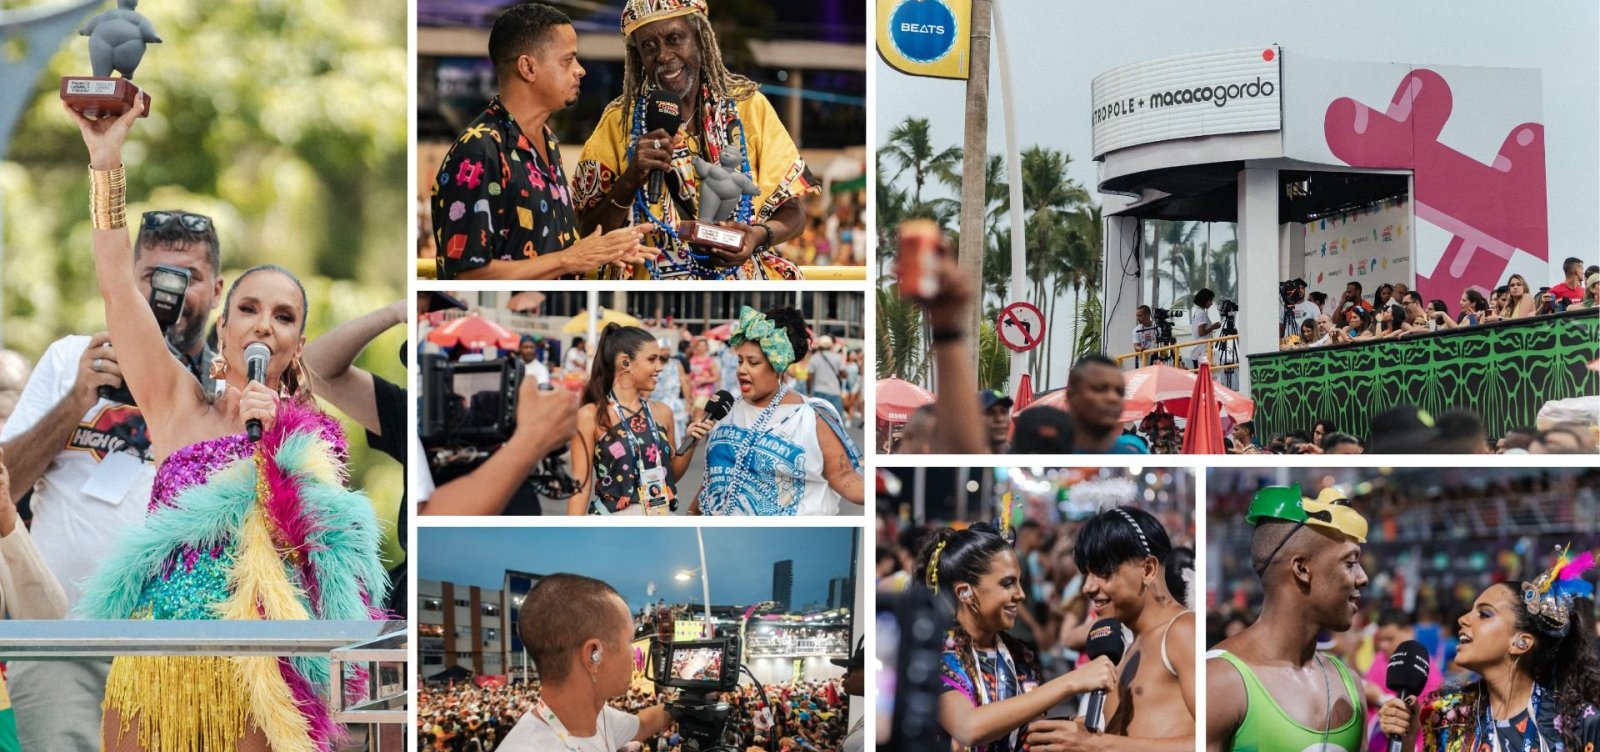 Salvador Carnaval do Brasil: com 100h de transmissão, Metrópole e Macaco Gordo chegam a 6 mi de pessoas